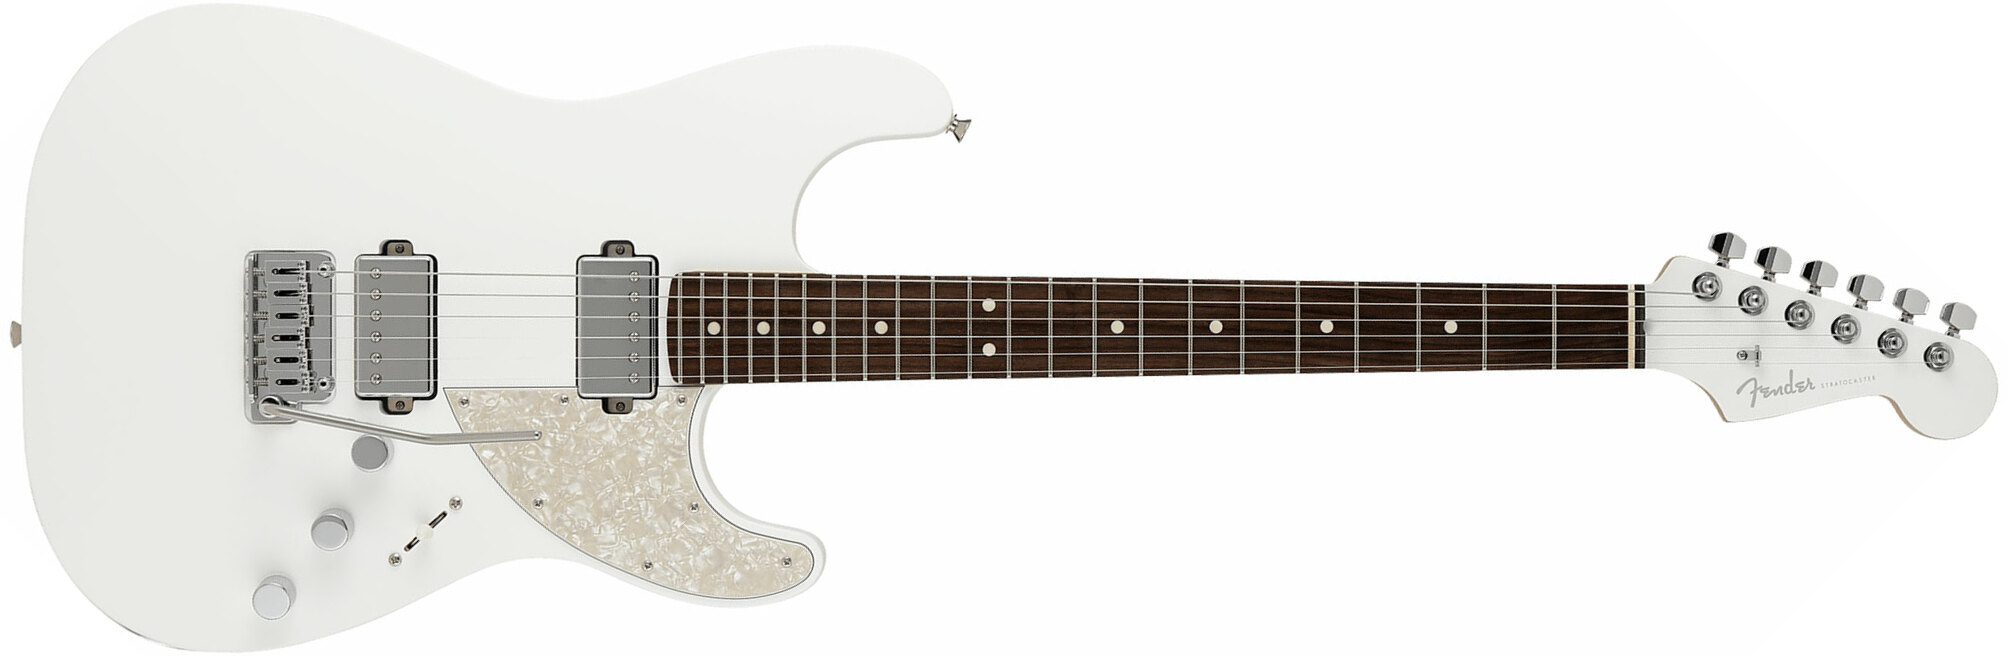 Fender Strat Elemental Mij Jap 2h Trem Rw - Nimbus White - Guitarra eléctrica con forma de str. - Main picture